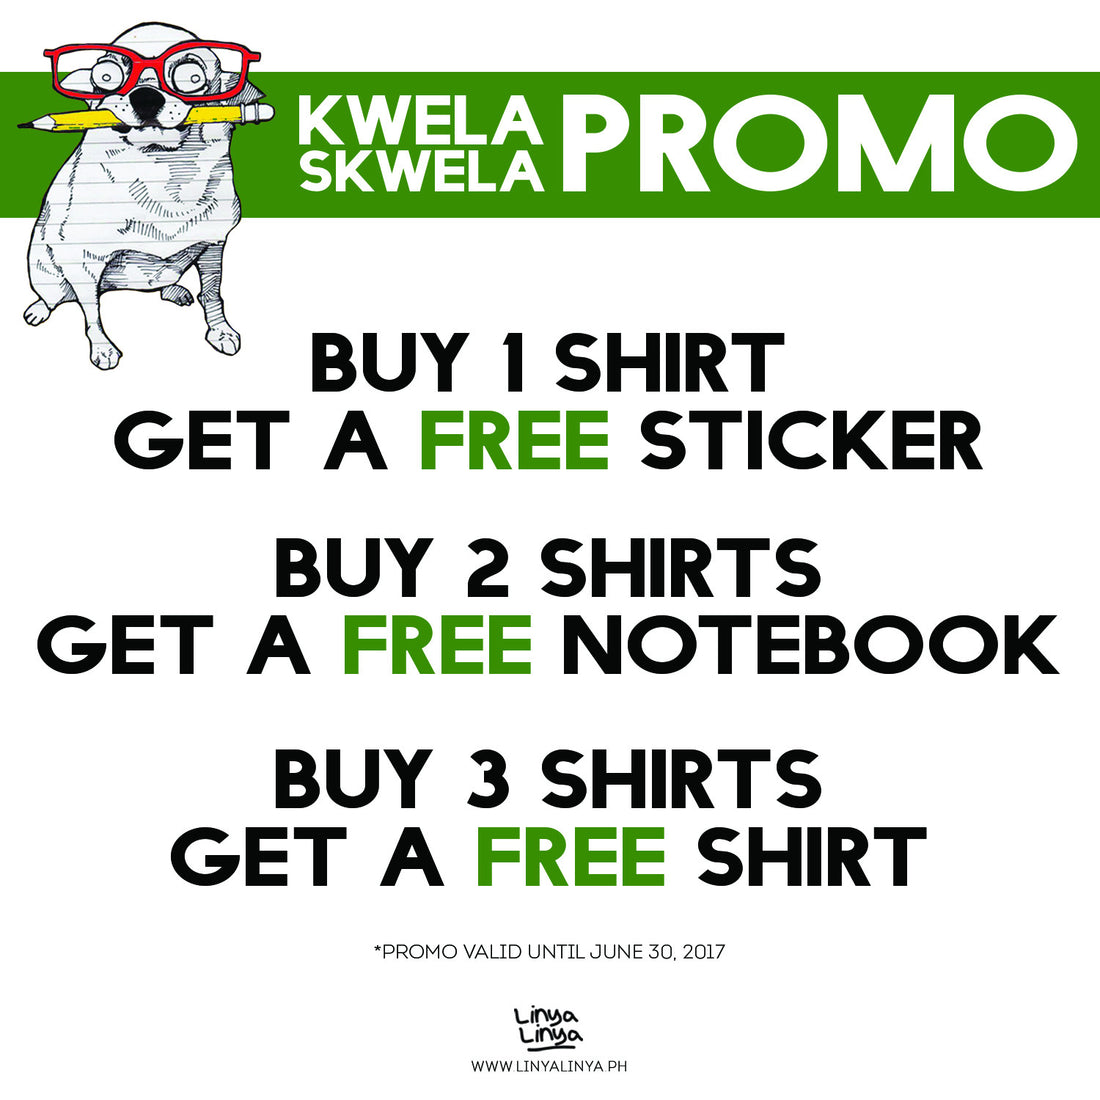 You can’t spell “Skwela” without “Kwela”! #KwelaSkwelaPromo #PromoAlert